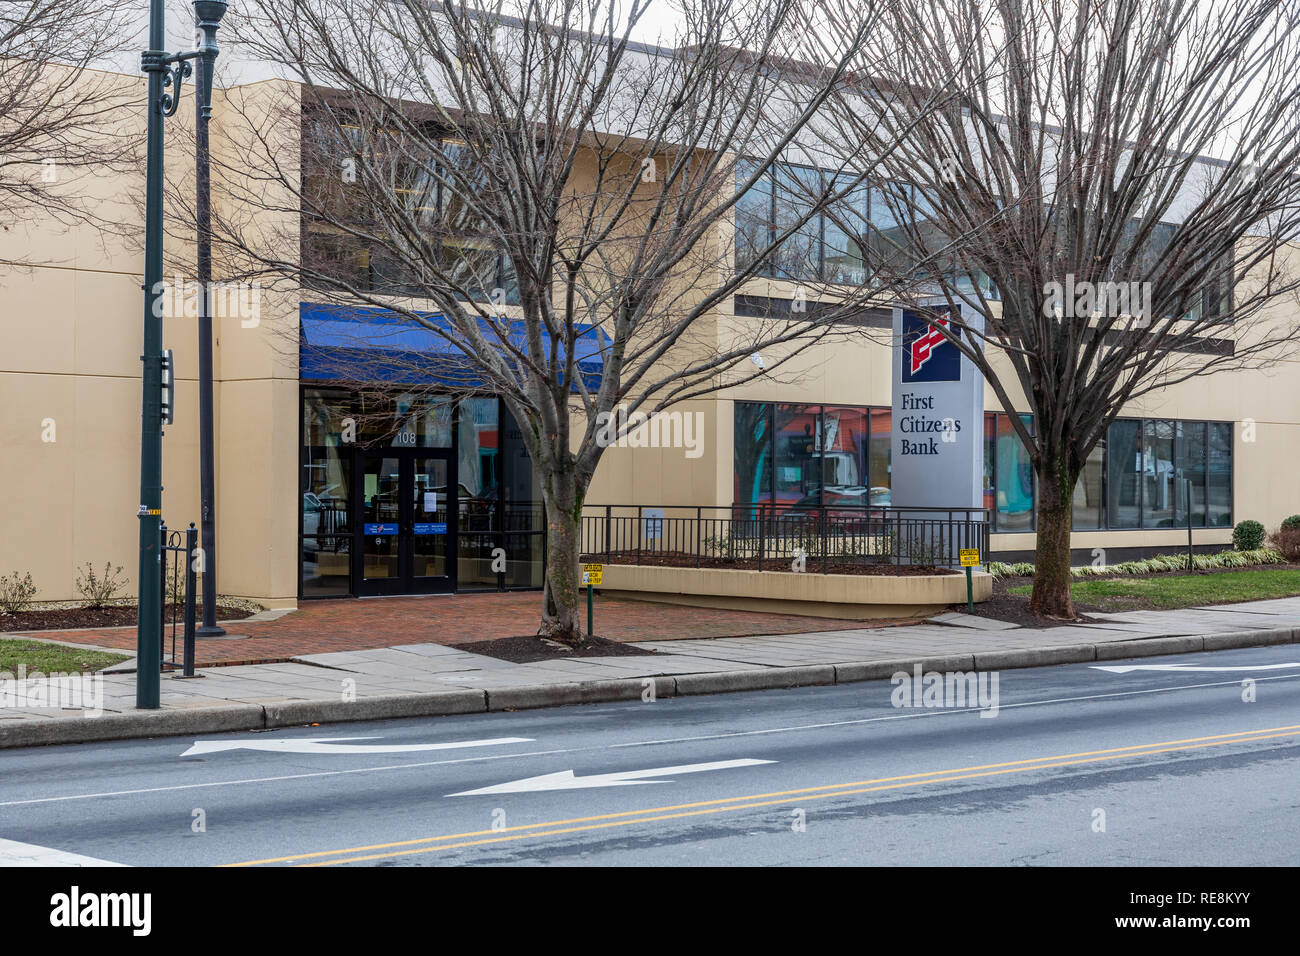 ASHEVILLE, NC, Stati Uniti d'America-1/18/19: un ramo di primo Citizens Bank in downtown. Foto Stock